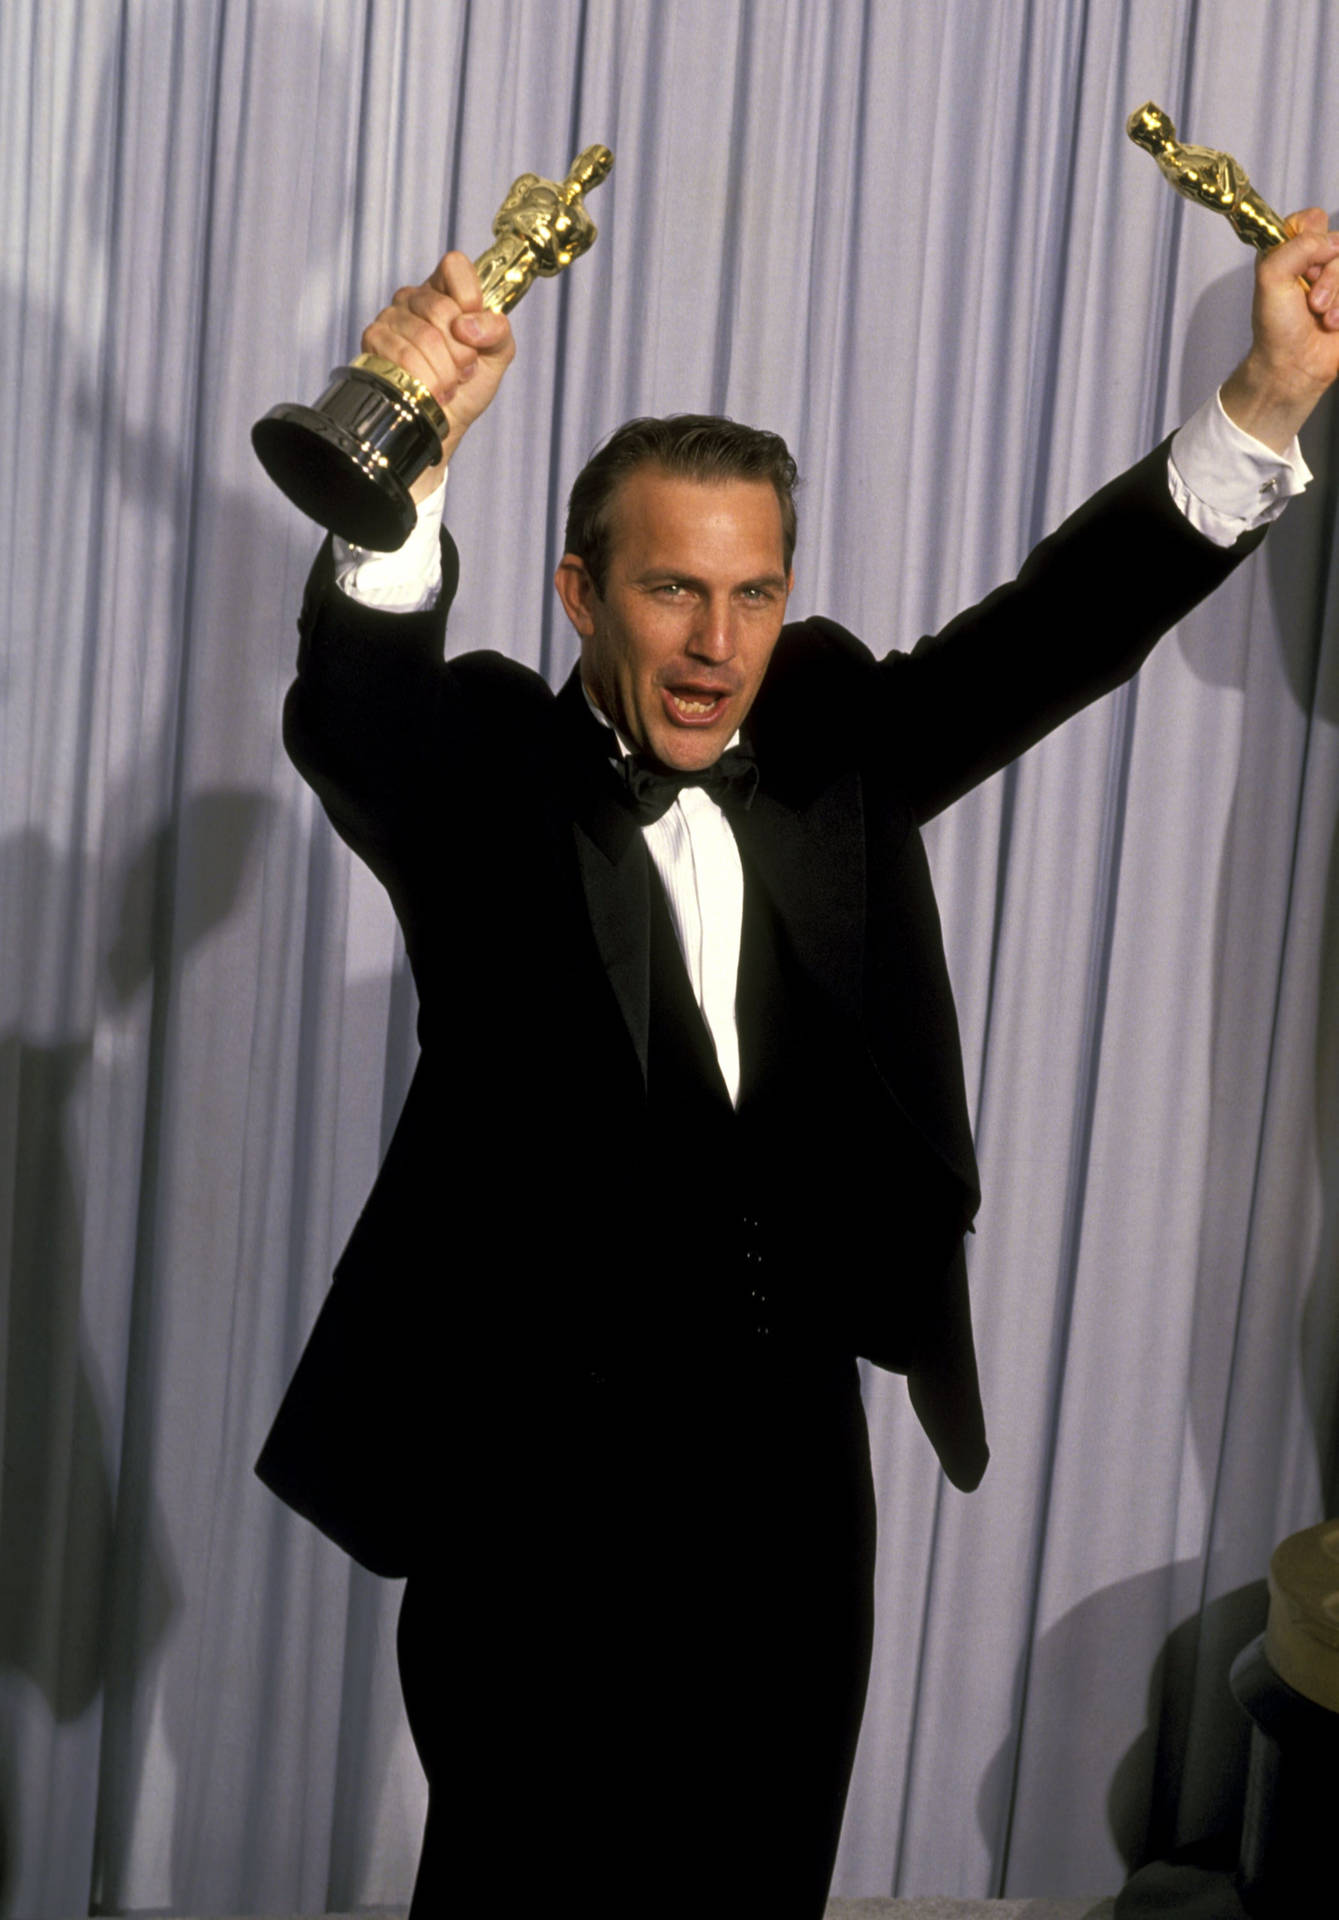 Kevin Costner Oscar Awards 1991 Background